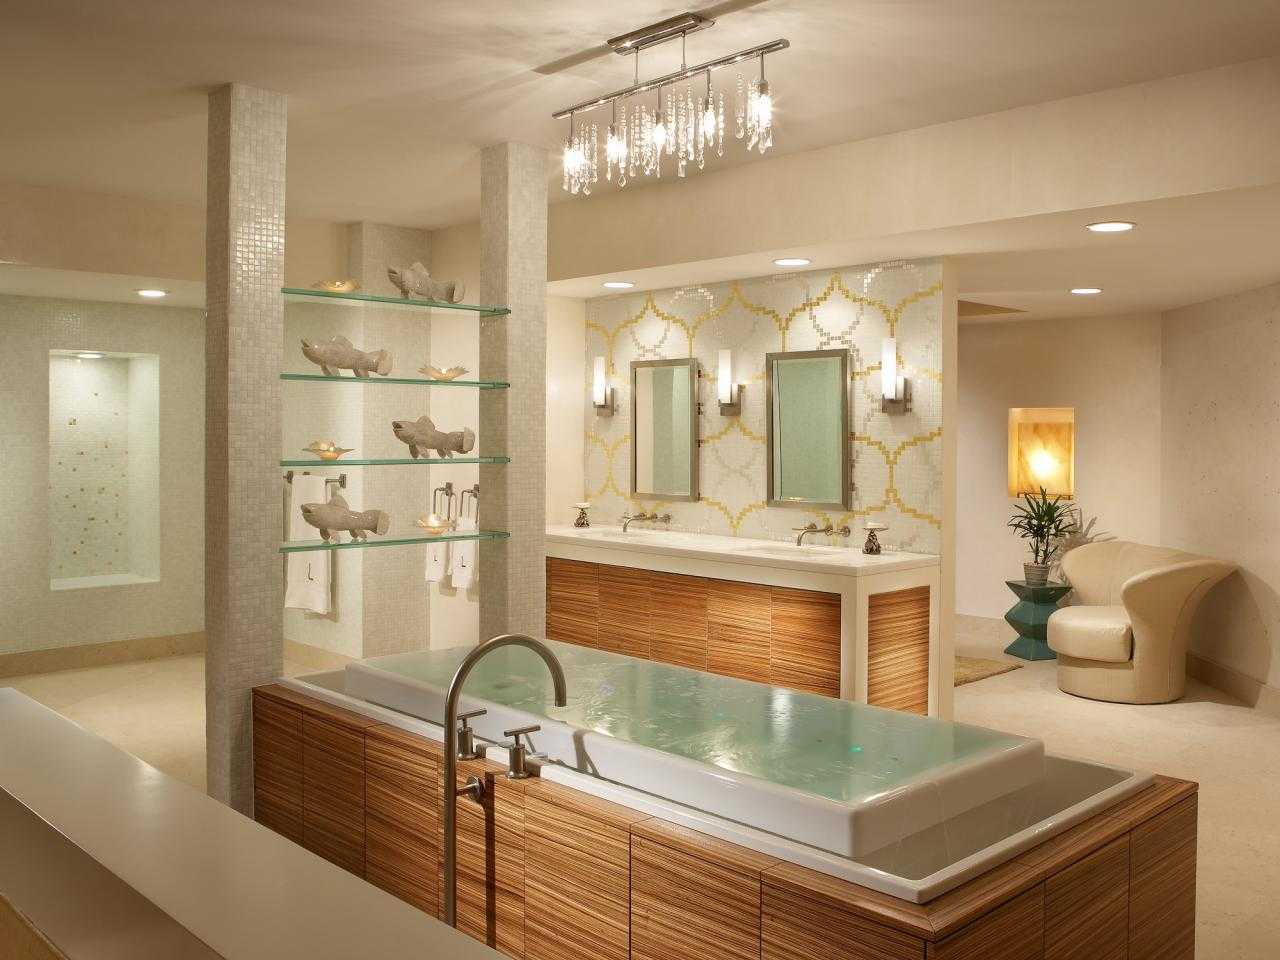 Уровень ванной комнаты. Освещение в ванной. Светильники для ванной комнаты. Красивые Ванные комнаты. Светильники в ванной комнате в интерьере.